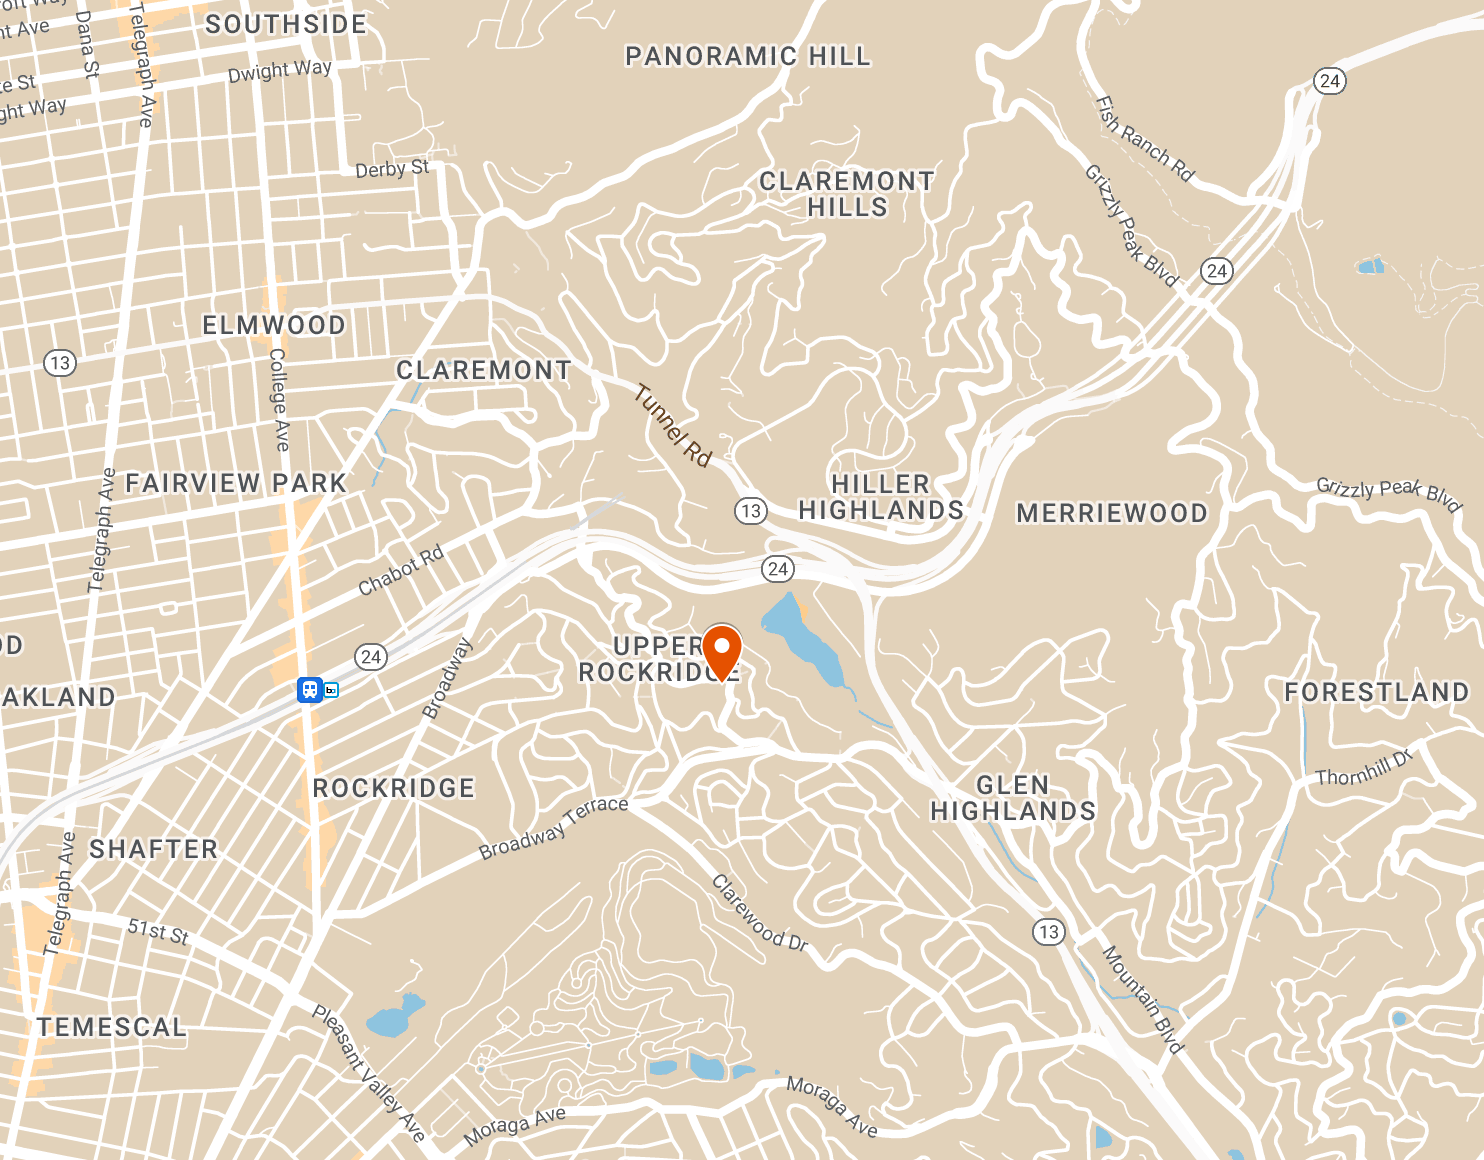 Magnitude 2.9 earthquake gives Berkeley a shake